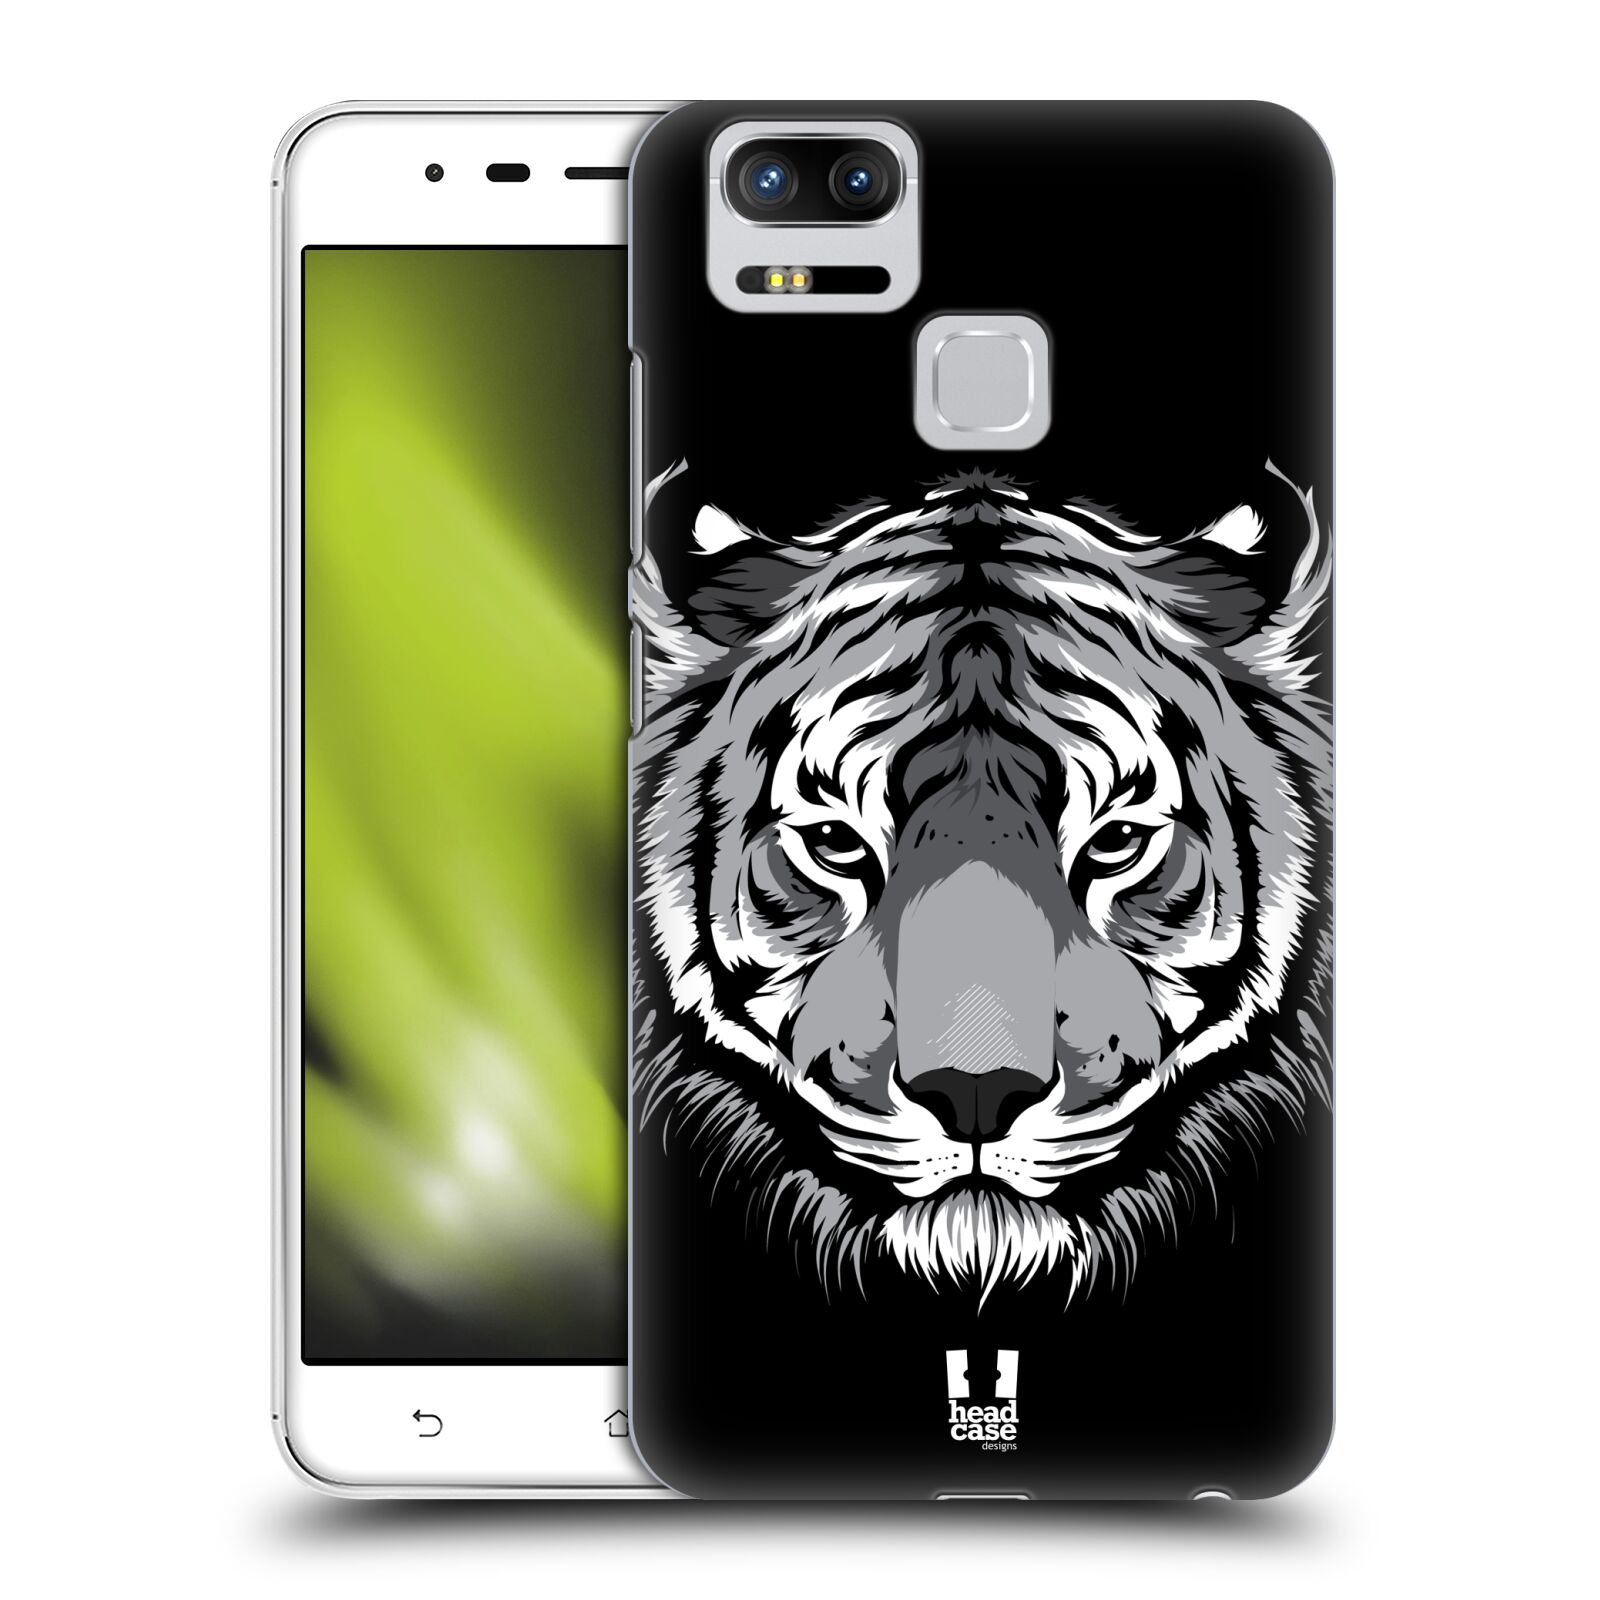 HEAD CASE plastový obal na mobil Asus Zenfone 3 Zoom ZE553KL vzor Zvíře kreslená tvář 2 tygr